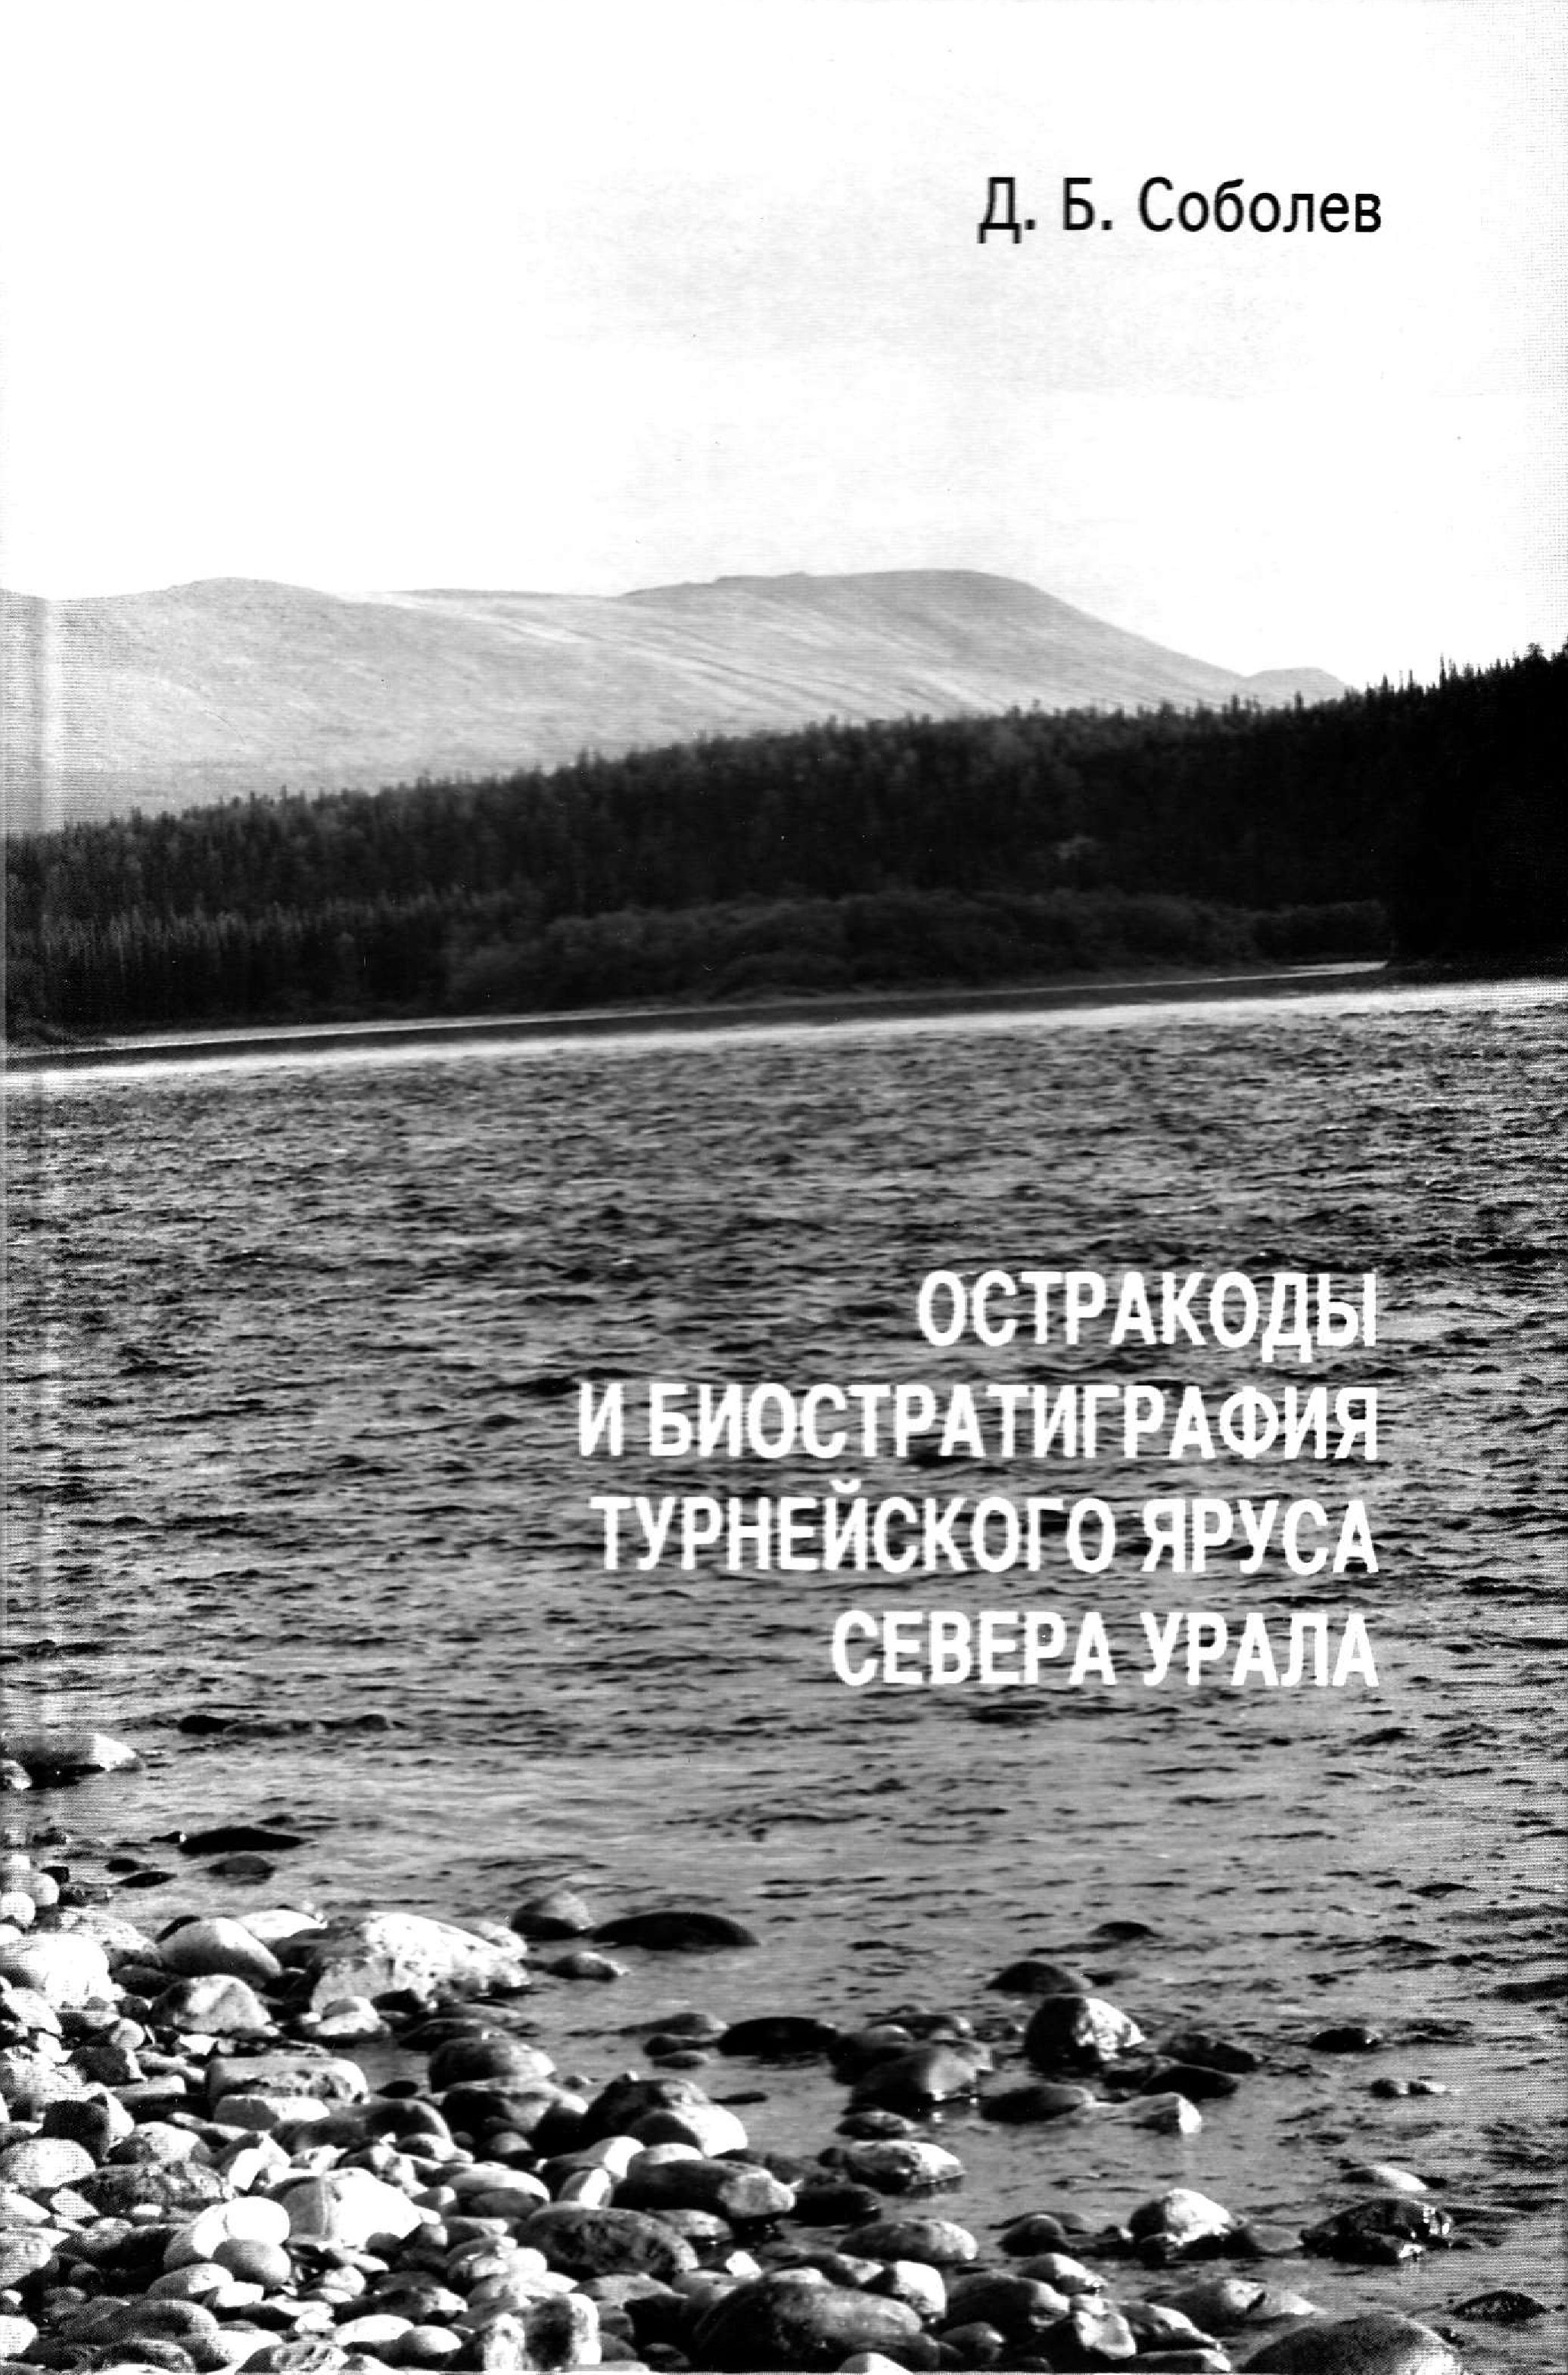 Соболев Д.Б. Остракоды и биостратиграфия турнейского яруса севера Урала